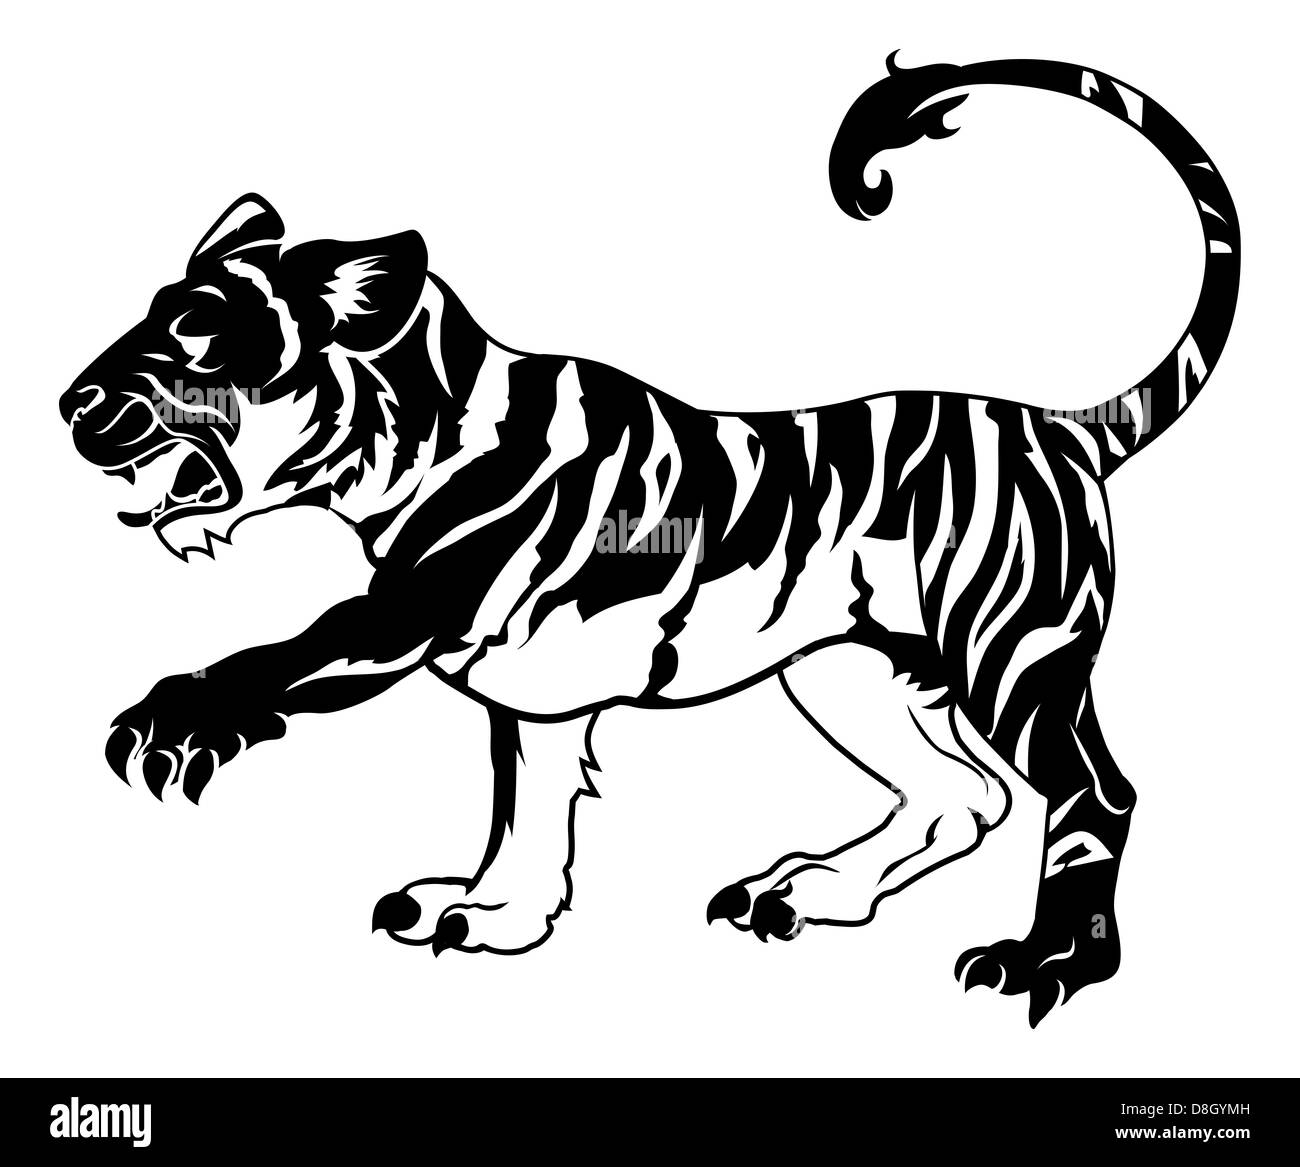 Une illustration d'un tigre stylisé peut-être un tatouage Banque D'Images